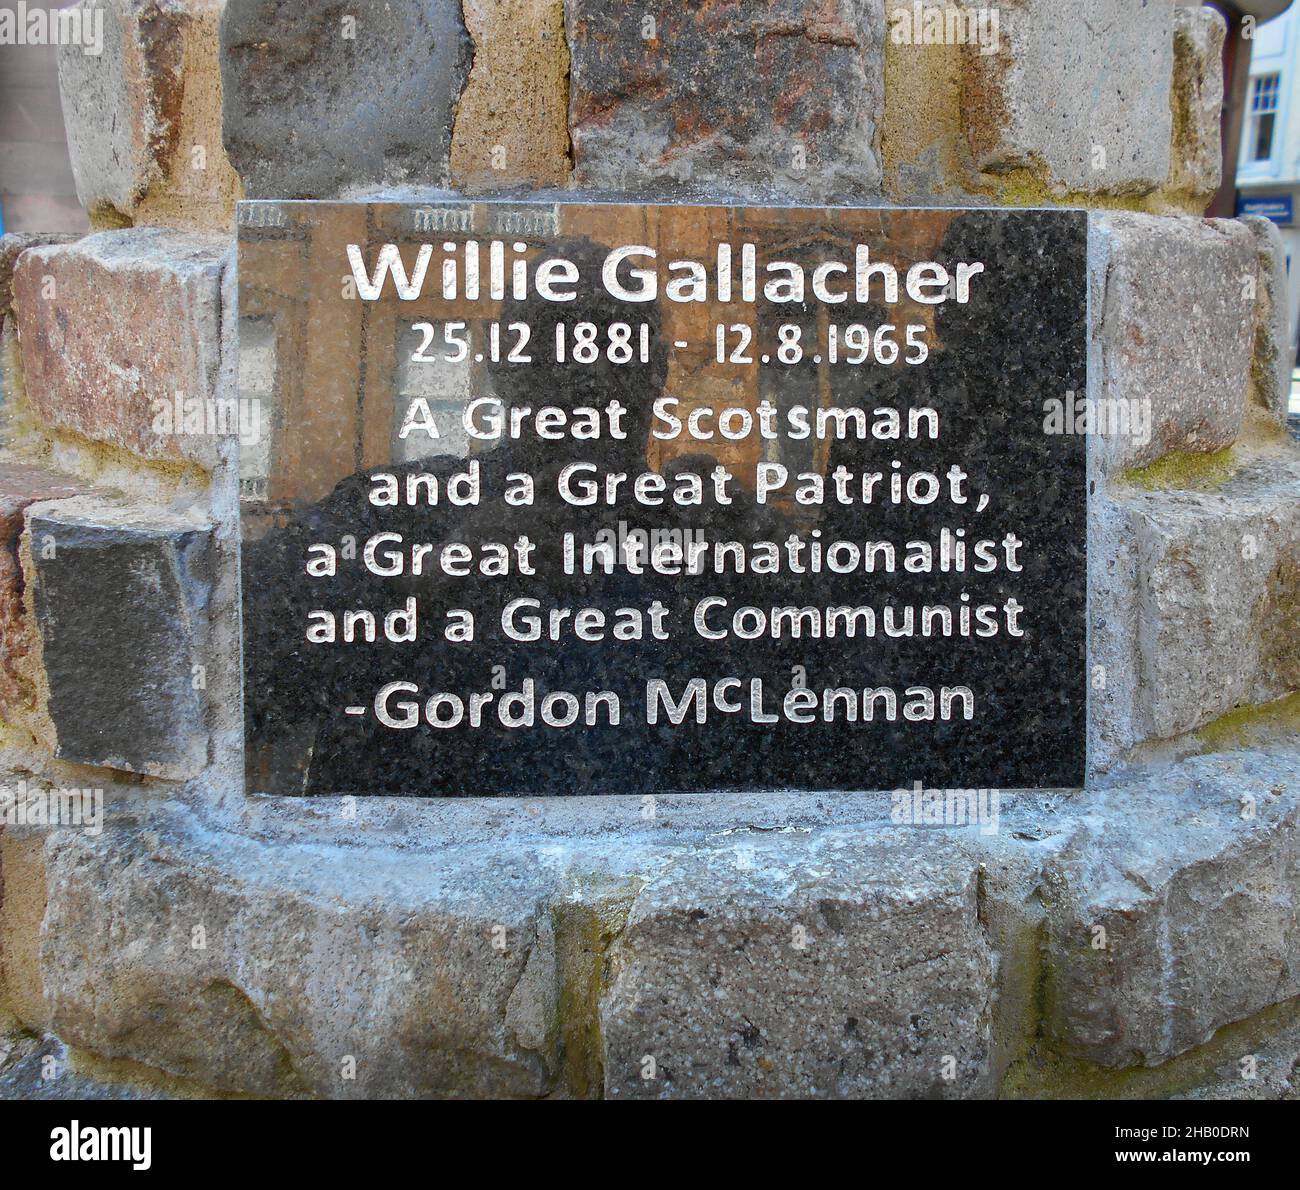 En la ciudad de Paisley, cerca de Glasgow, se encuentra una piedra conmemorativa para conmemorar la vida de Willie Gallagher, diputado comunista escocés y gran político. ALAN WYLIE/©ALAMY Foto de stock